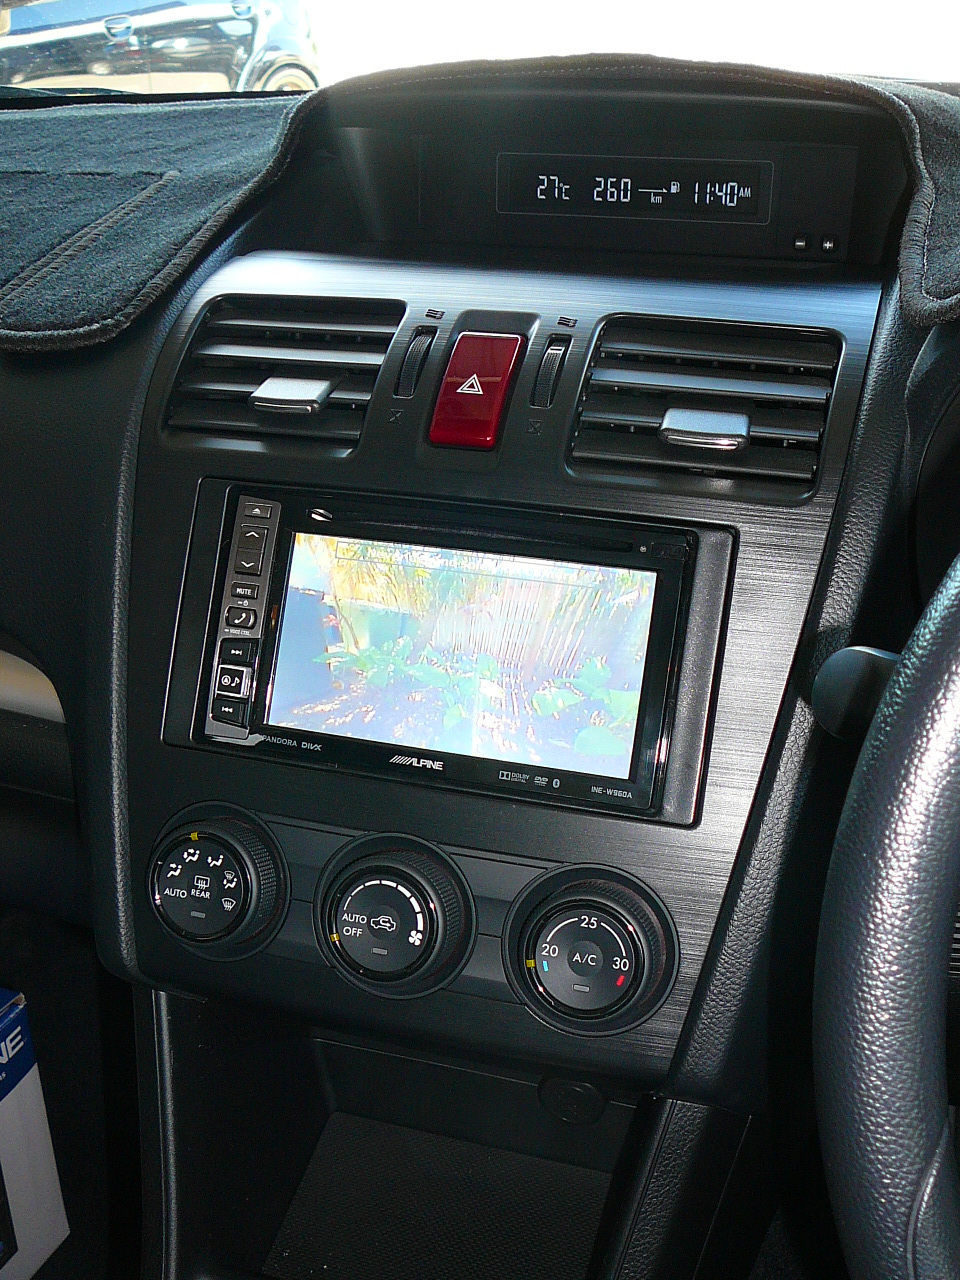 Subaru Impreza 2015, Alpine INE-W960 In Dash GPS Navigation System